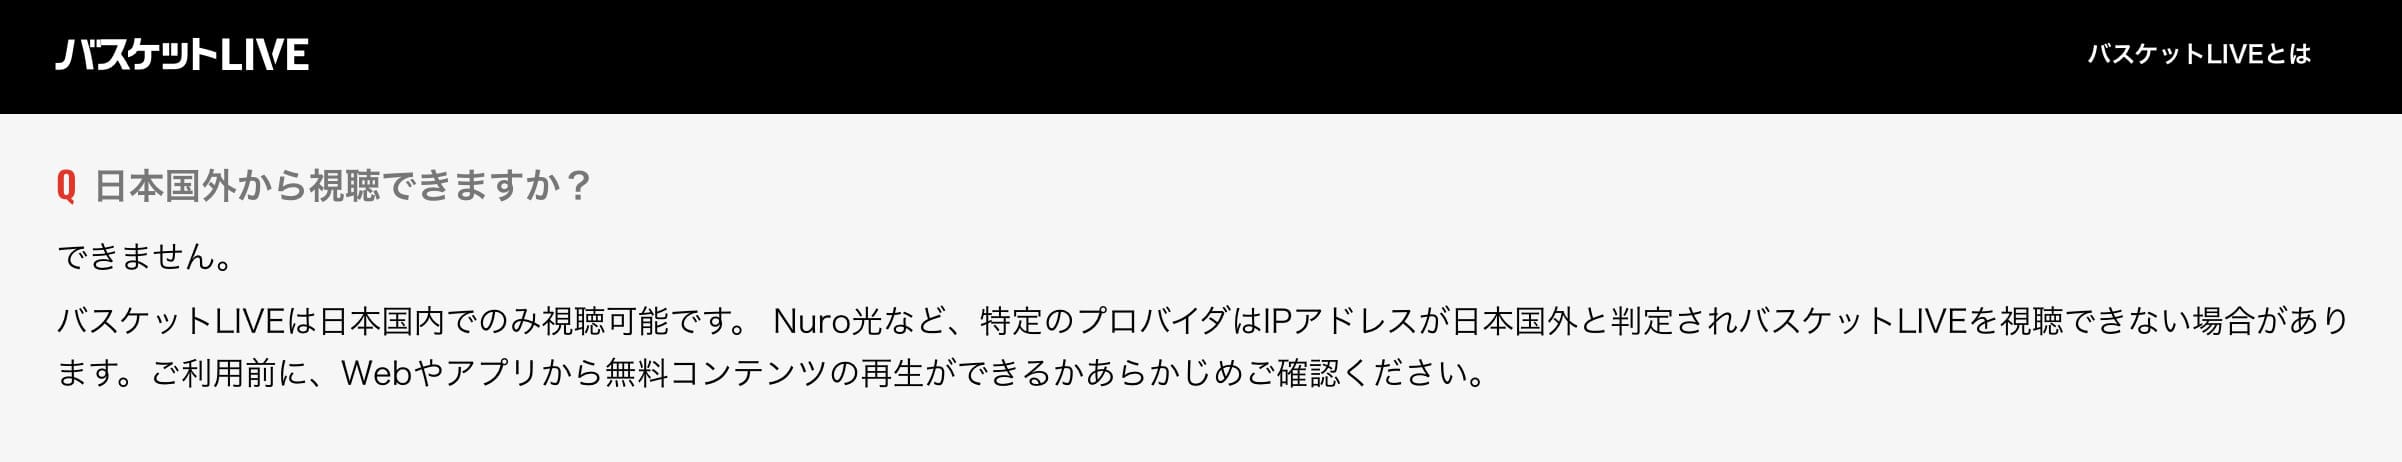 【バスケットLIVE公式】「バスケットLIVEは日本国内でのみ視聴可能です。」